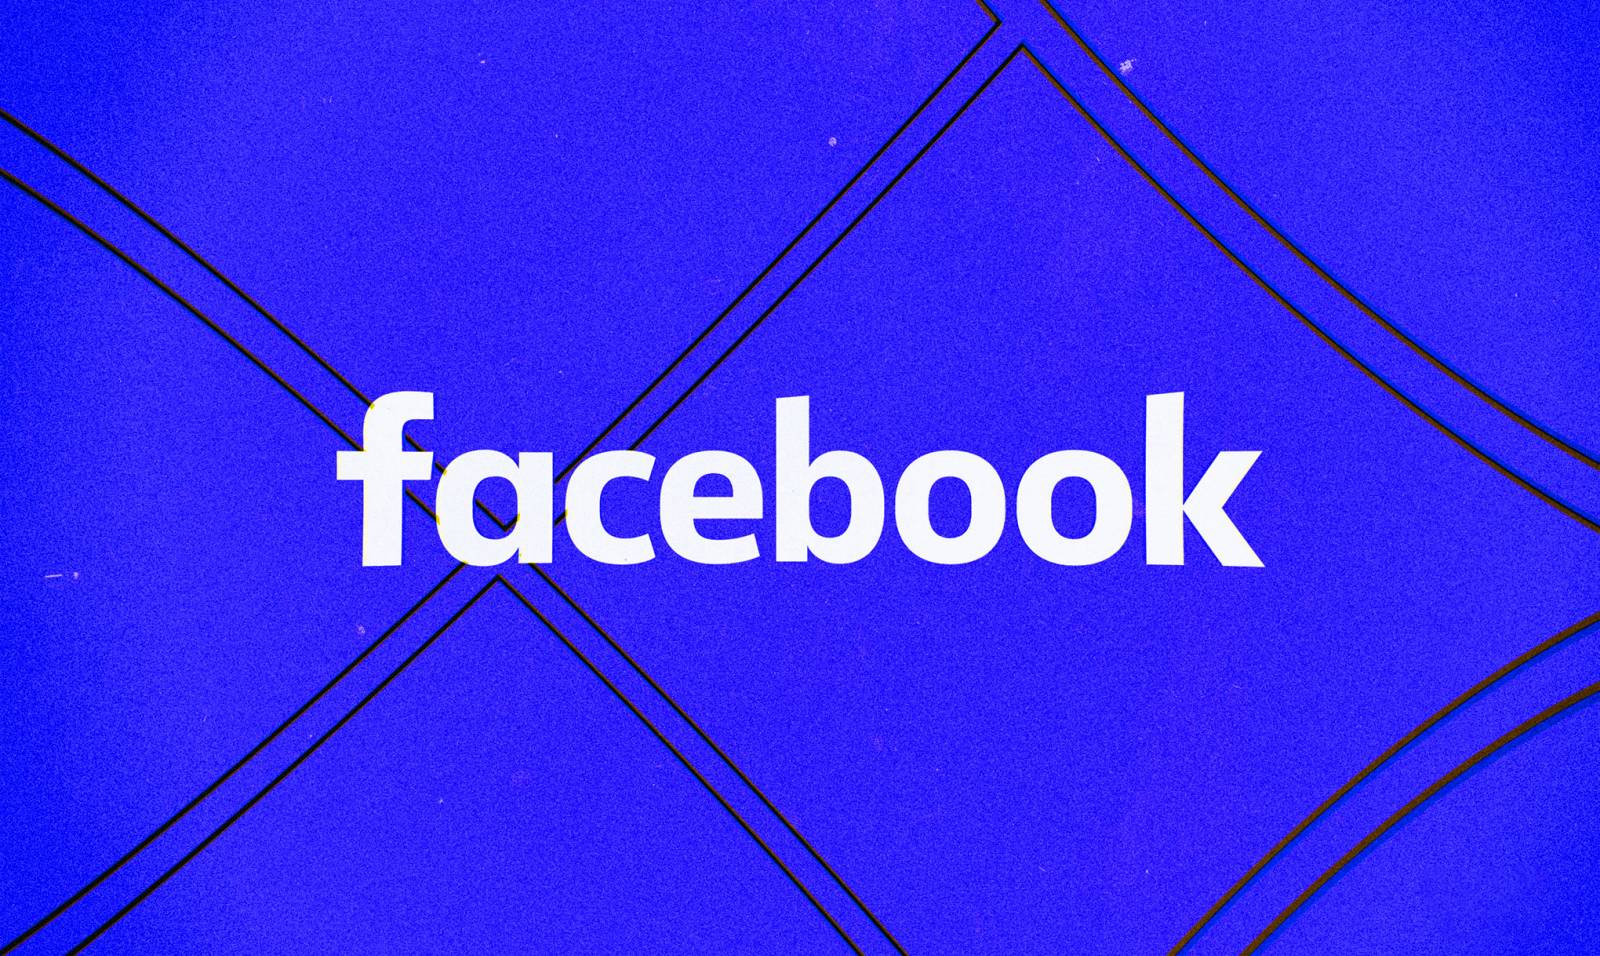 Facebook nieuwe update uitgebracht voor telefoons, welke veranderingen dit met zich meebrengt